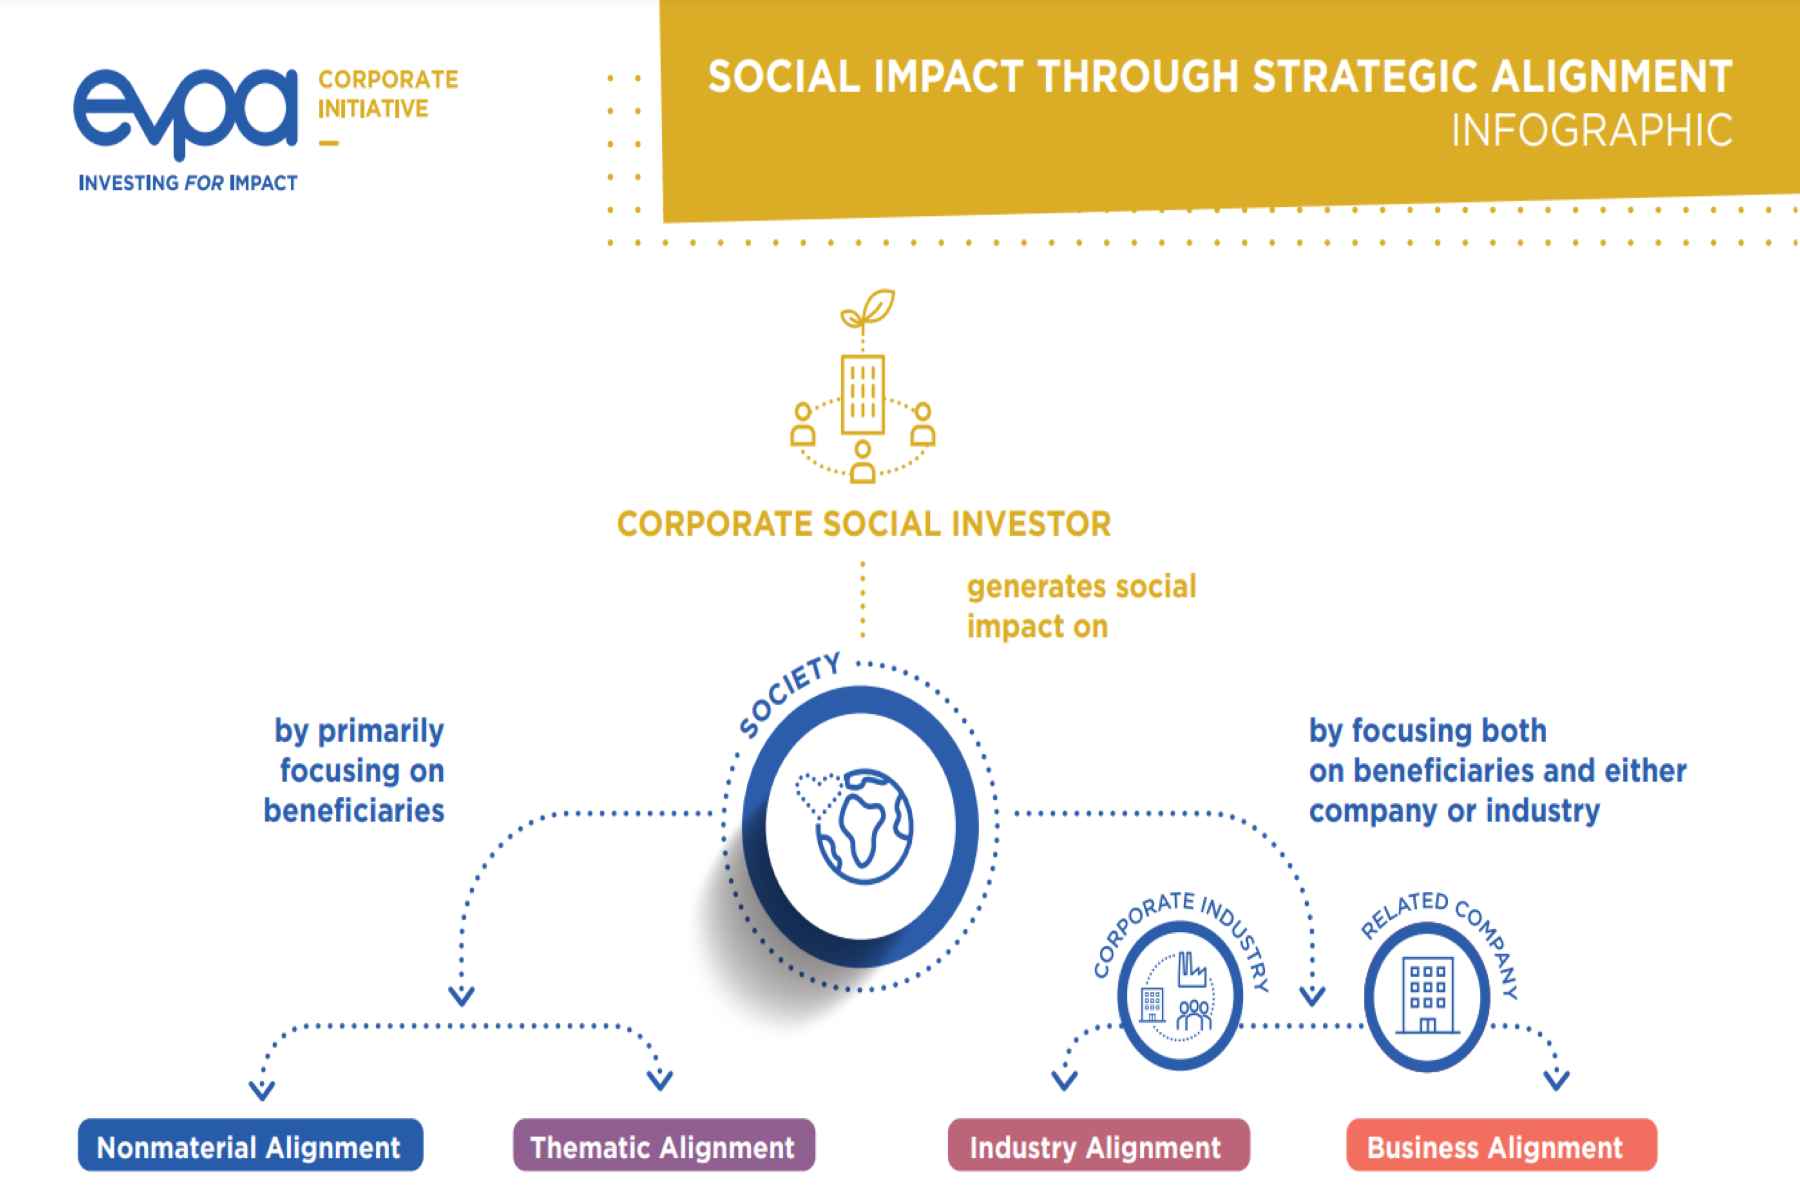 Social Impact through Strategic Alignment - Infographic